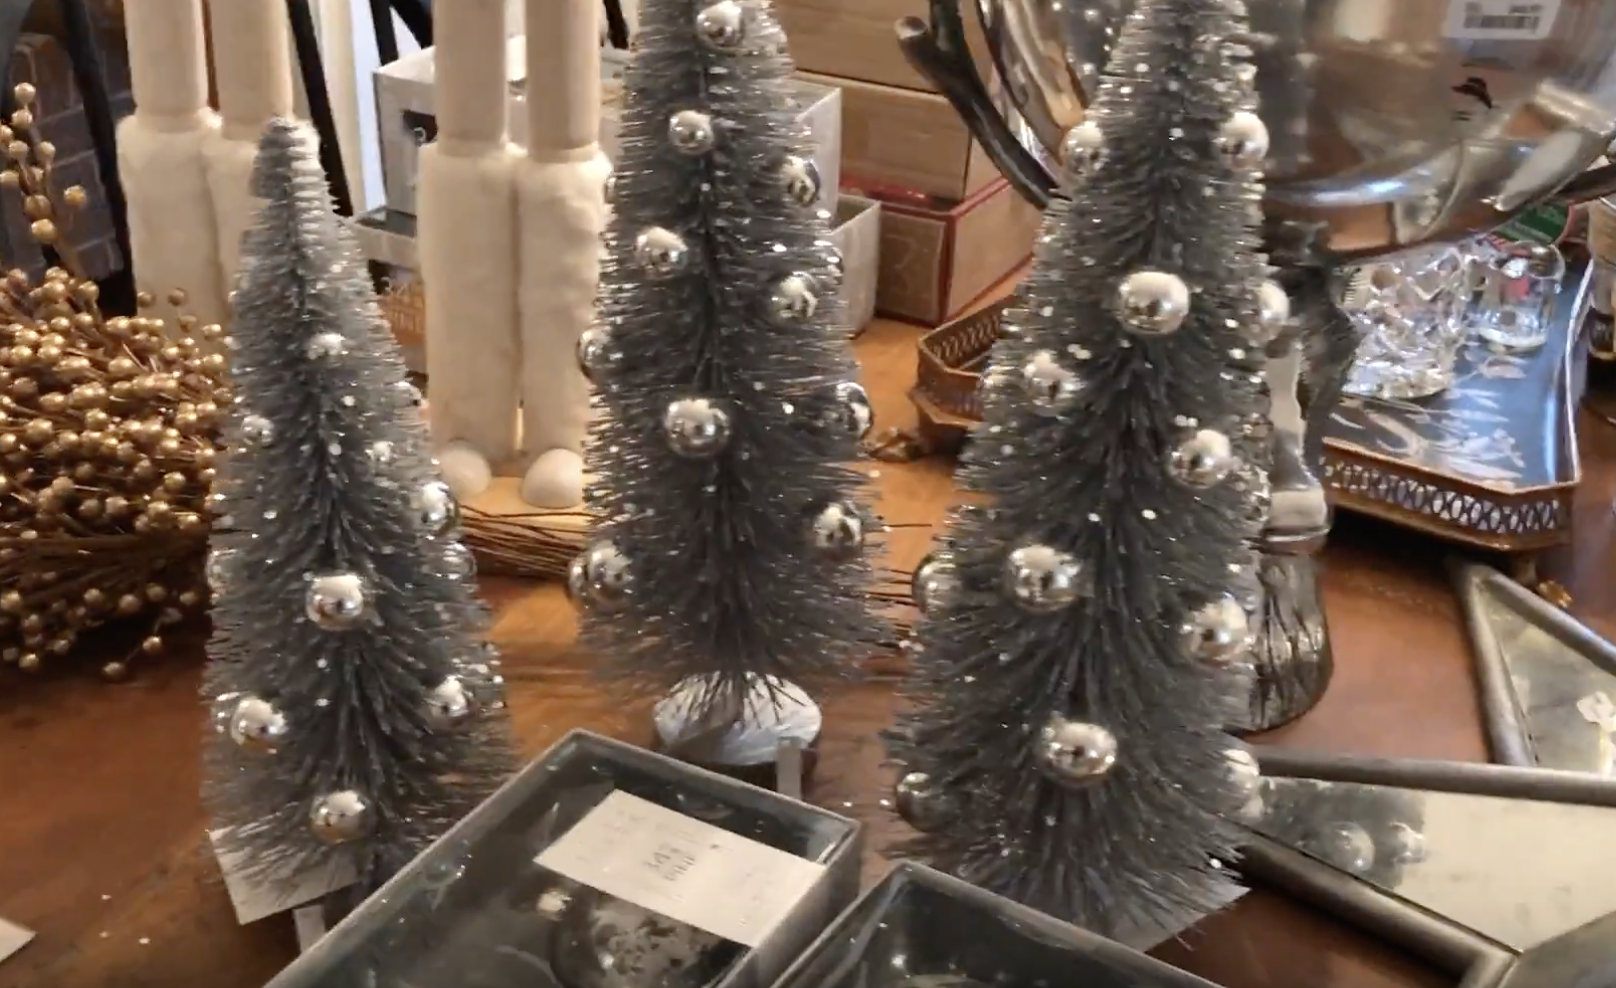 How to make a pine cone Christmas tree DIY tutorial - LINDA DAVIS - NEFL